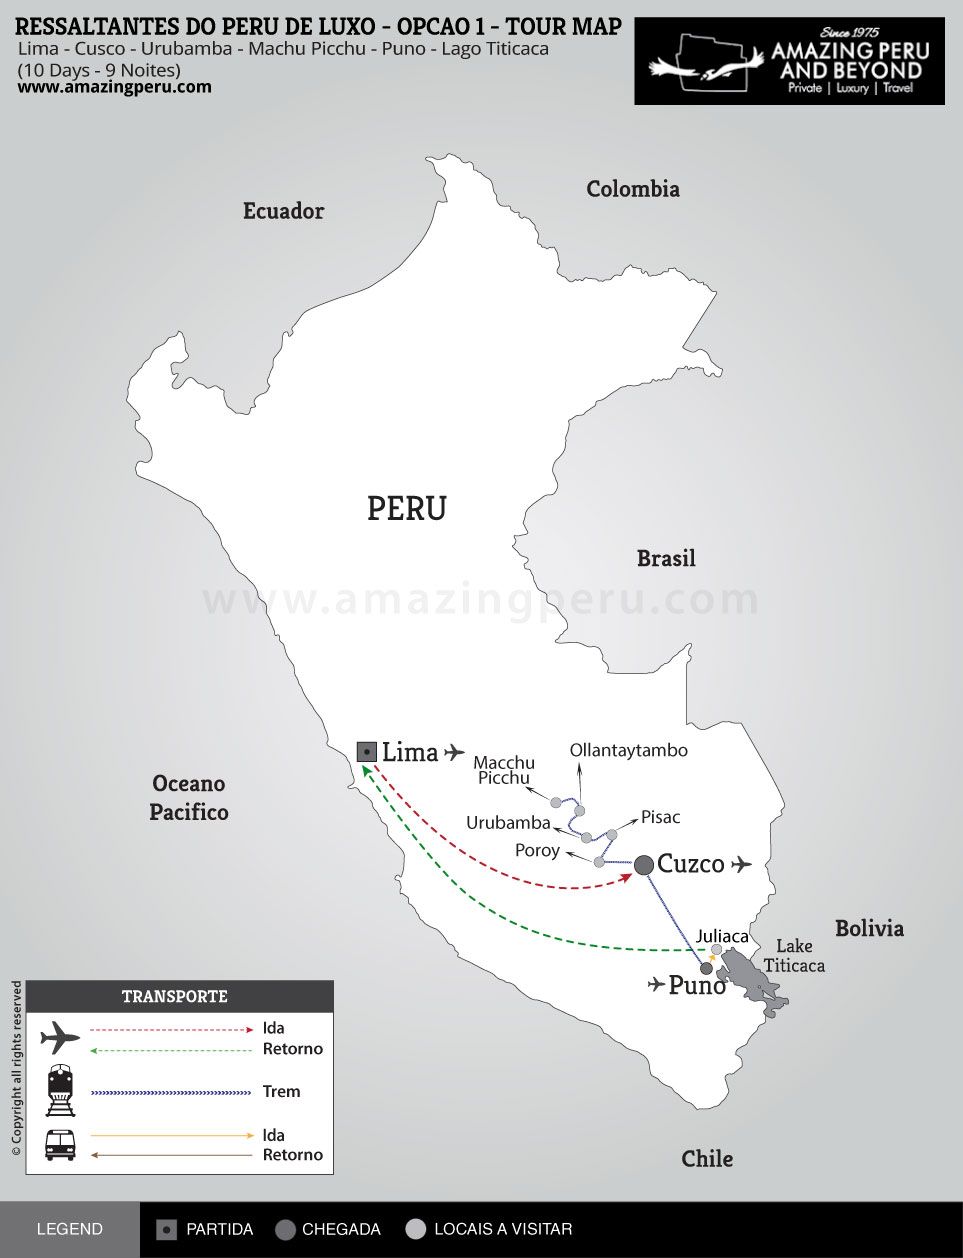 Ressaltantes do Peru de Luxo - Opo 1 - 10 days / 9 nights.